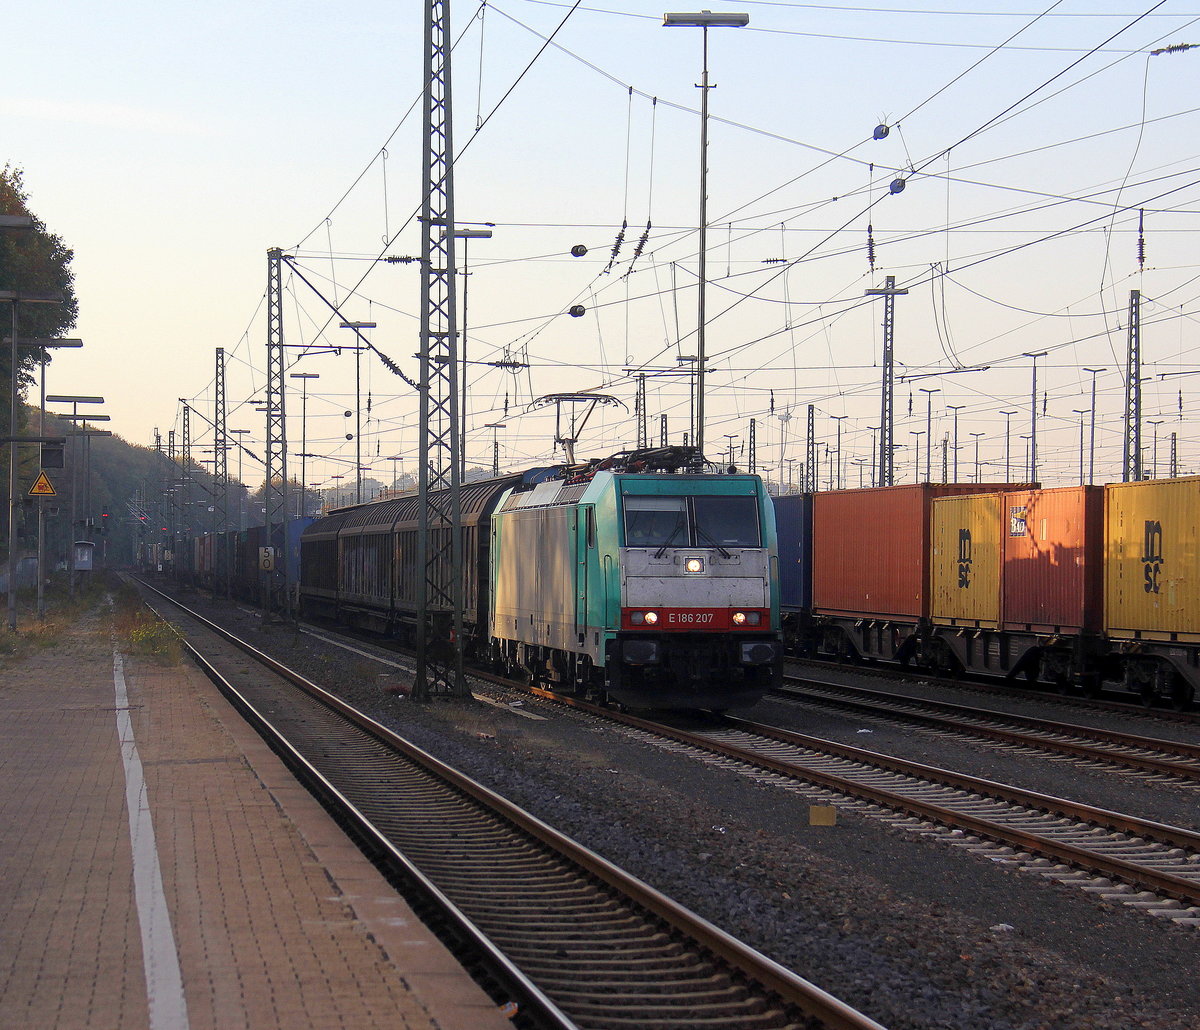 186 207 von der Rurtalbahn steht in Aachen-West mit einem Güterzug.
Aufgenommen vom Bahnsteig in Aachen-West. 
Bei schönem Herbstwetter am Nachmittag vom 20.10.2018.